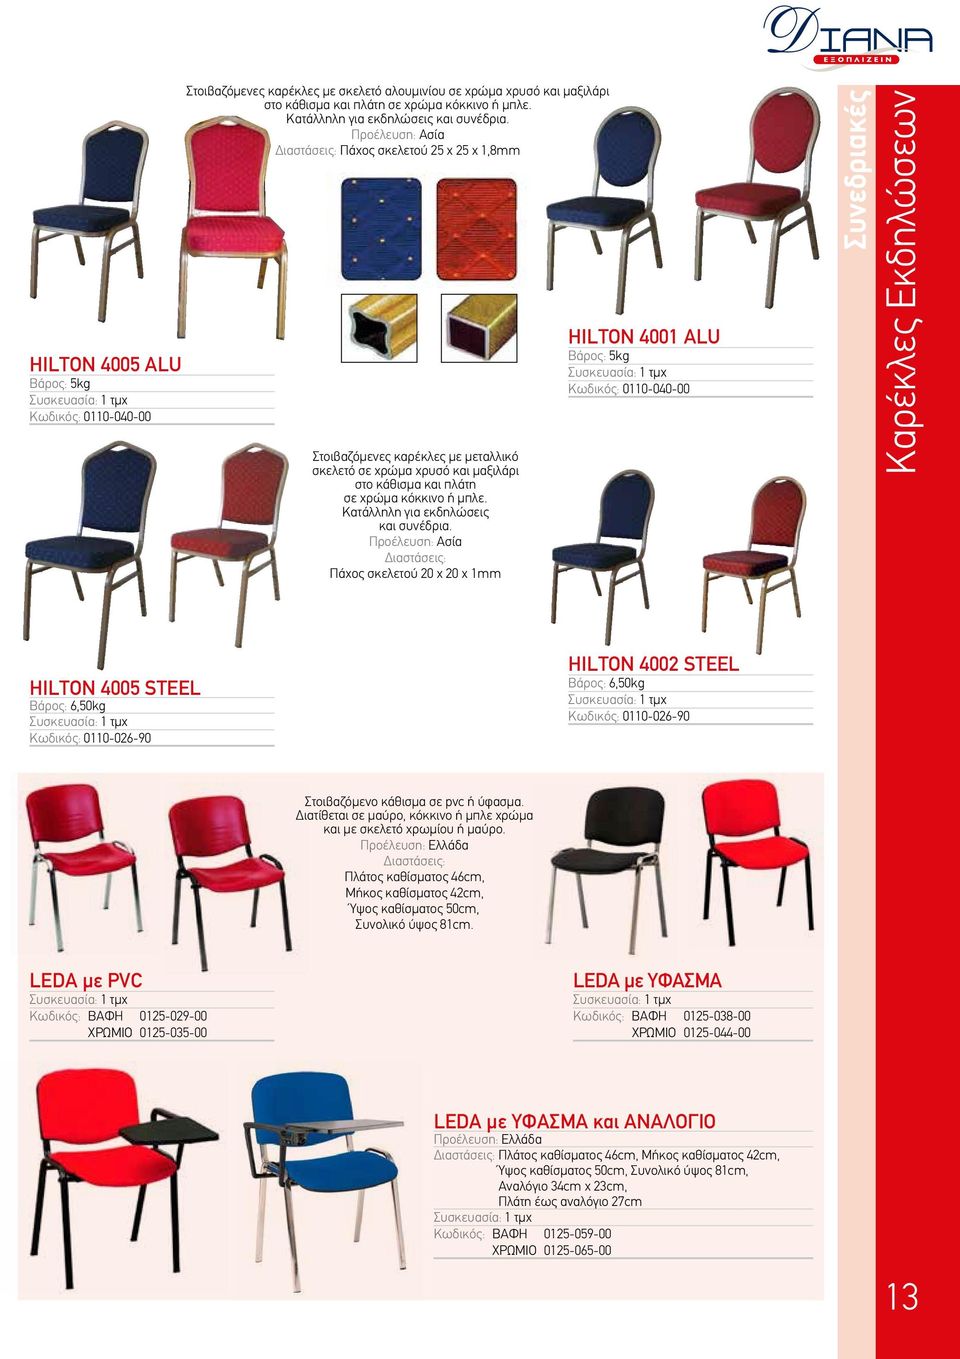 Διαστάσεις: Πάχος σκελετού 25 x 25 x 1,8mm Στοιβαζόμενες καρέκλες με μεταλλικό σκελετό σε χρώμα χρυσό και μαξιλάρι στο κάθισμα και πλάτη σε  Διαστάσεις: Πάχος σκελετού 20 x 20 x 1mm HILTON 4001 ALU